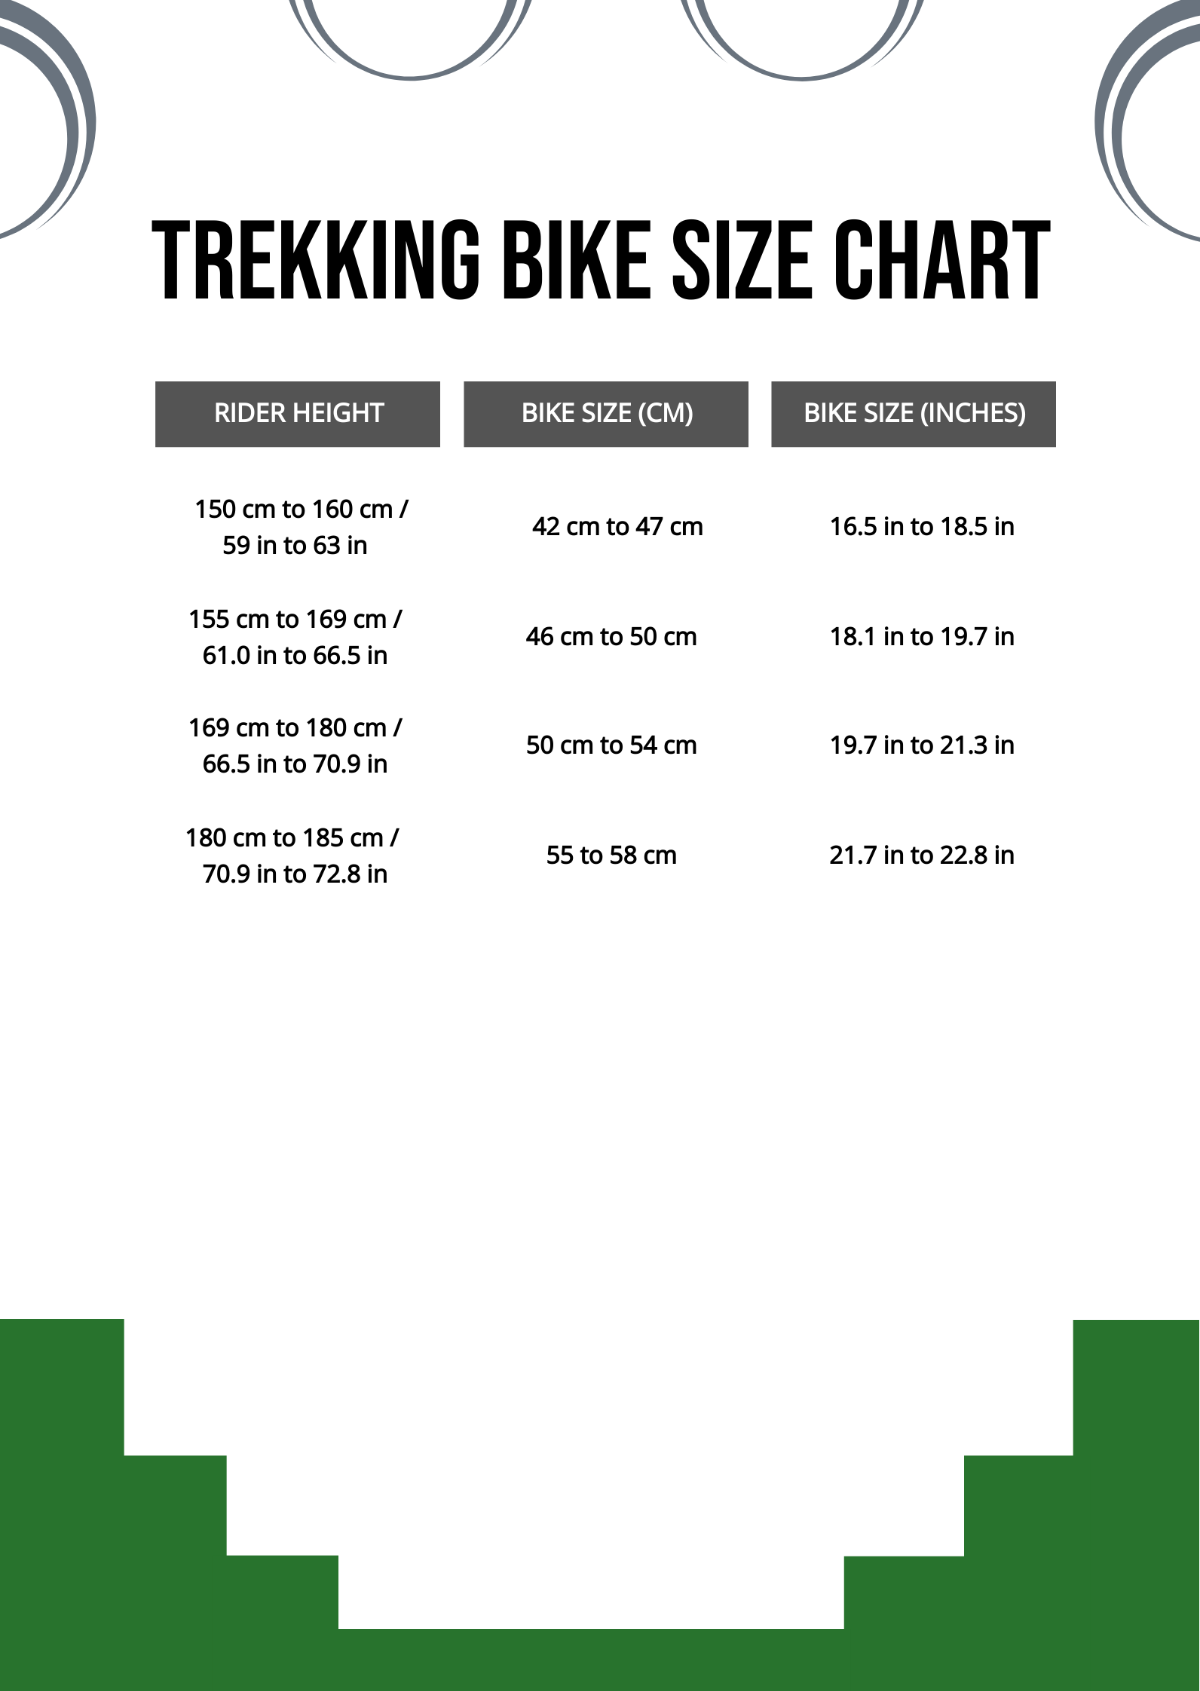 Trek Bike Size Chart Template